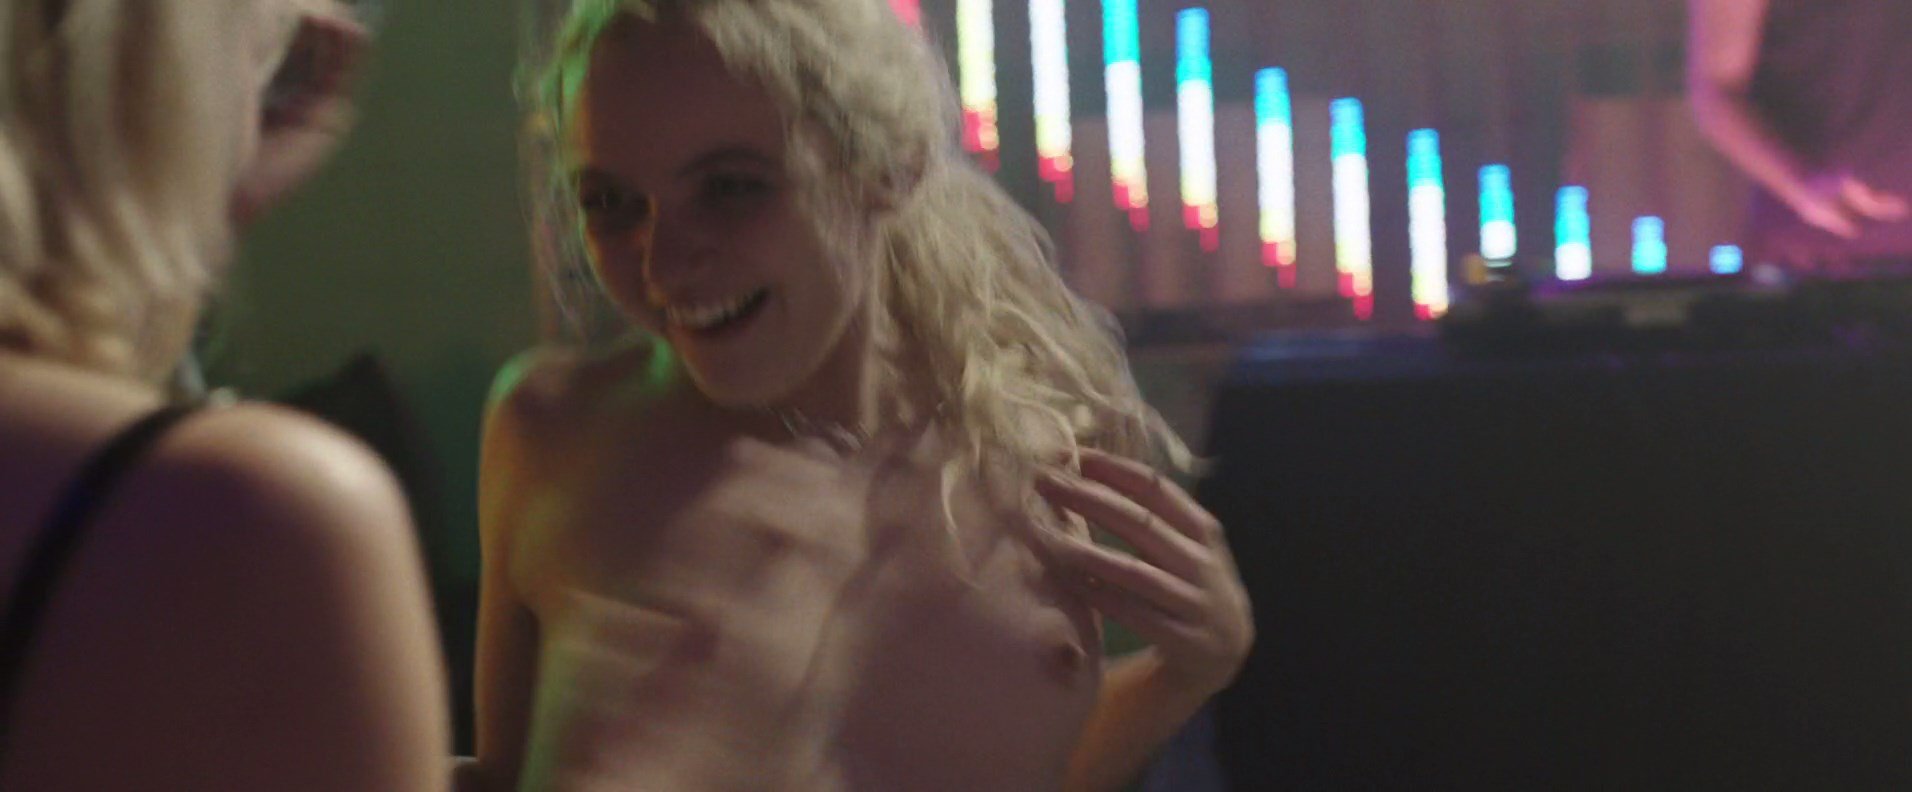 Morgan Saylor Nude - White Girl (2016) HD 1080p.